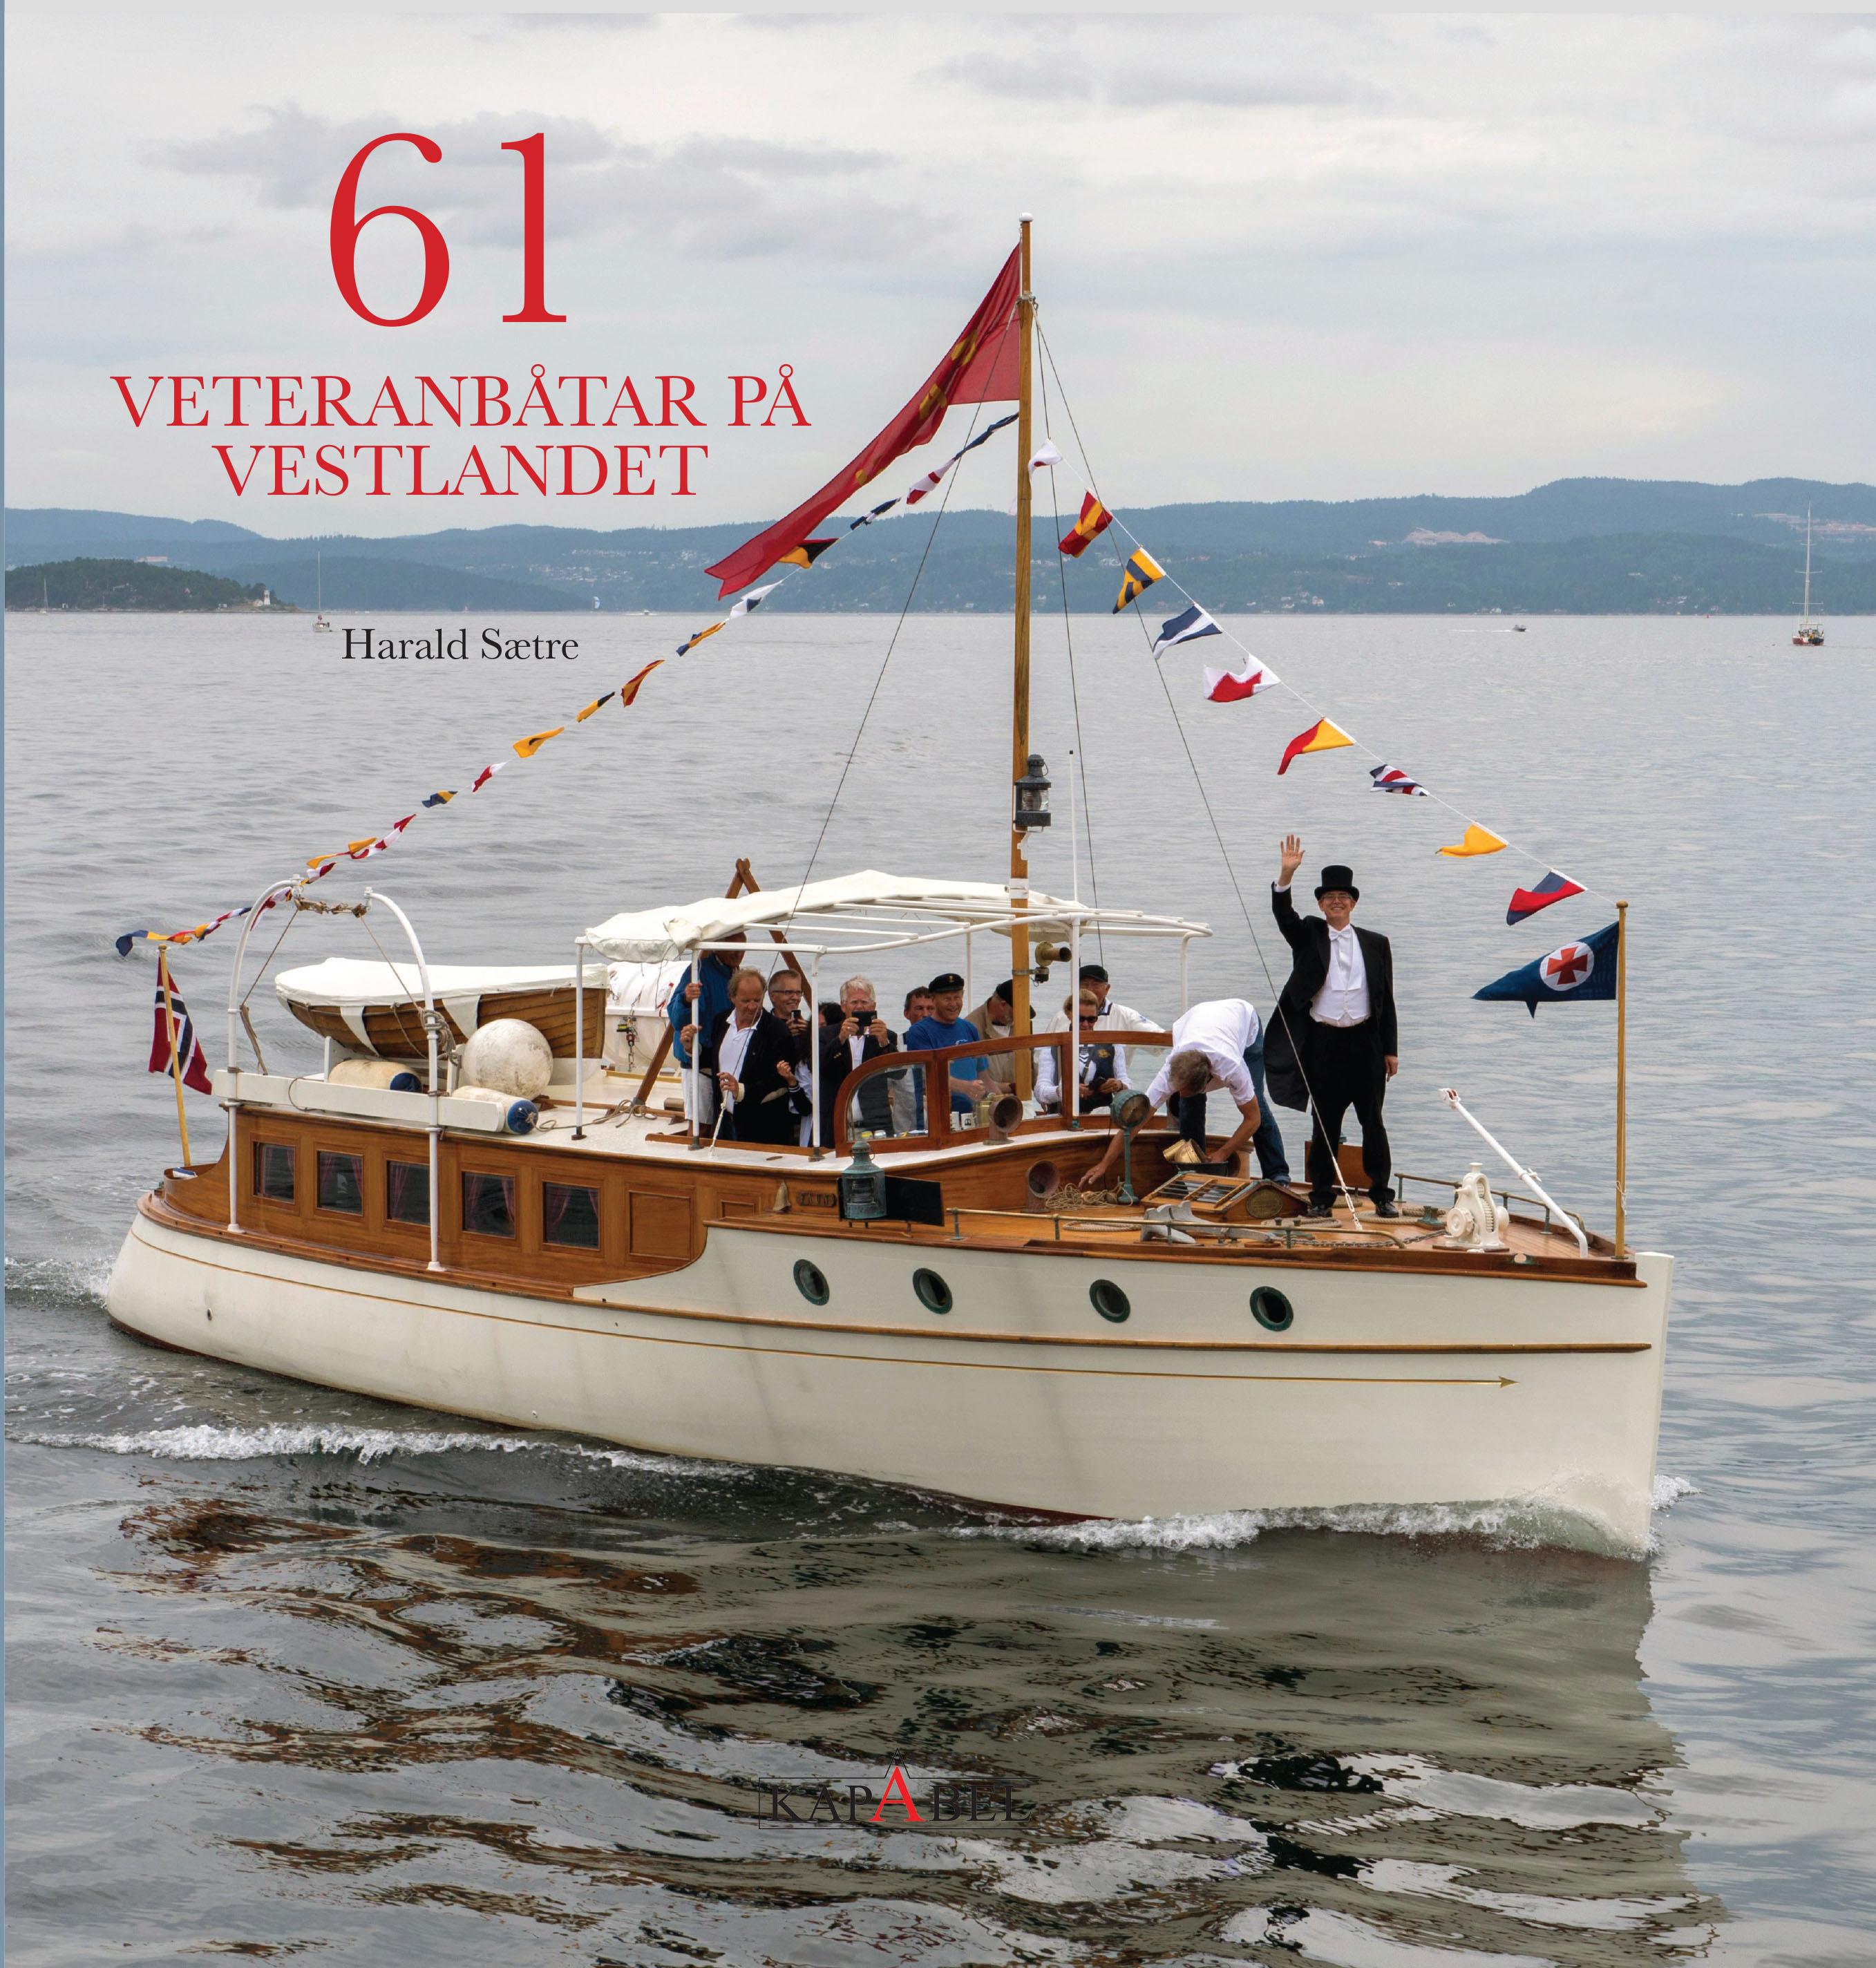 61 veteranbåtar på Vestlandet